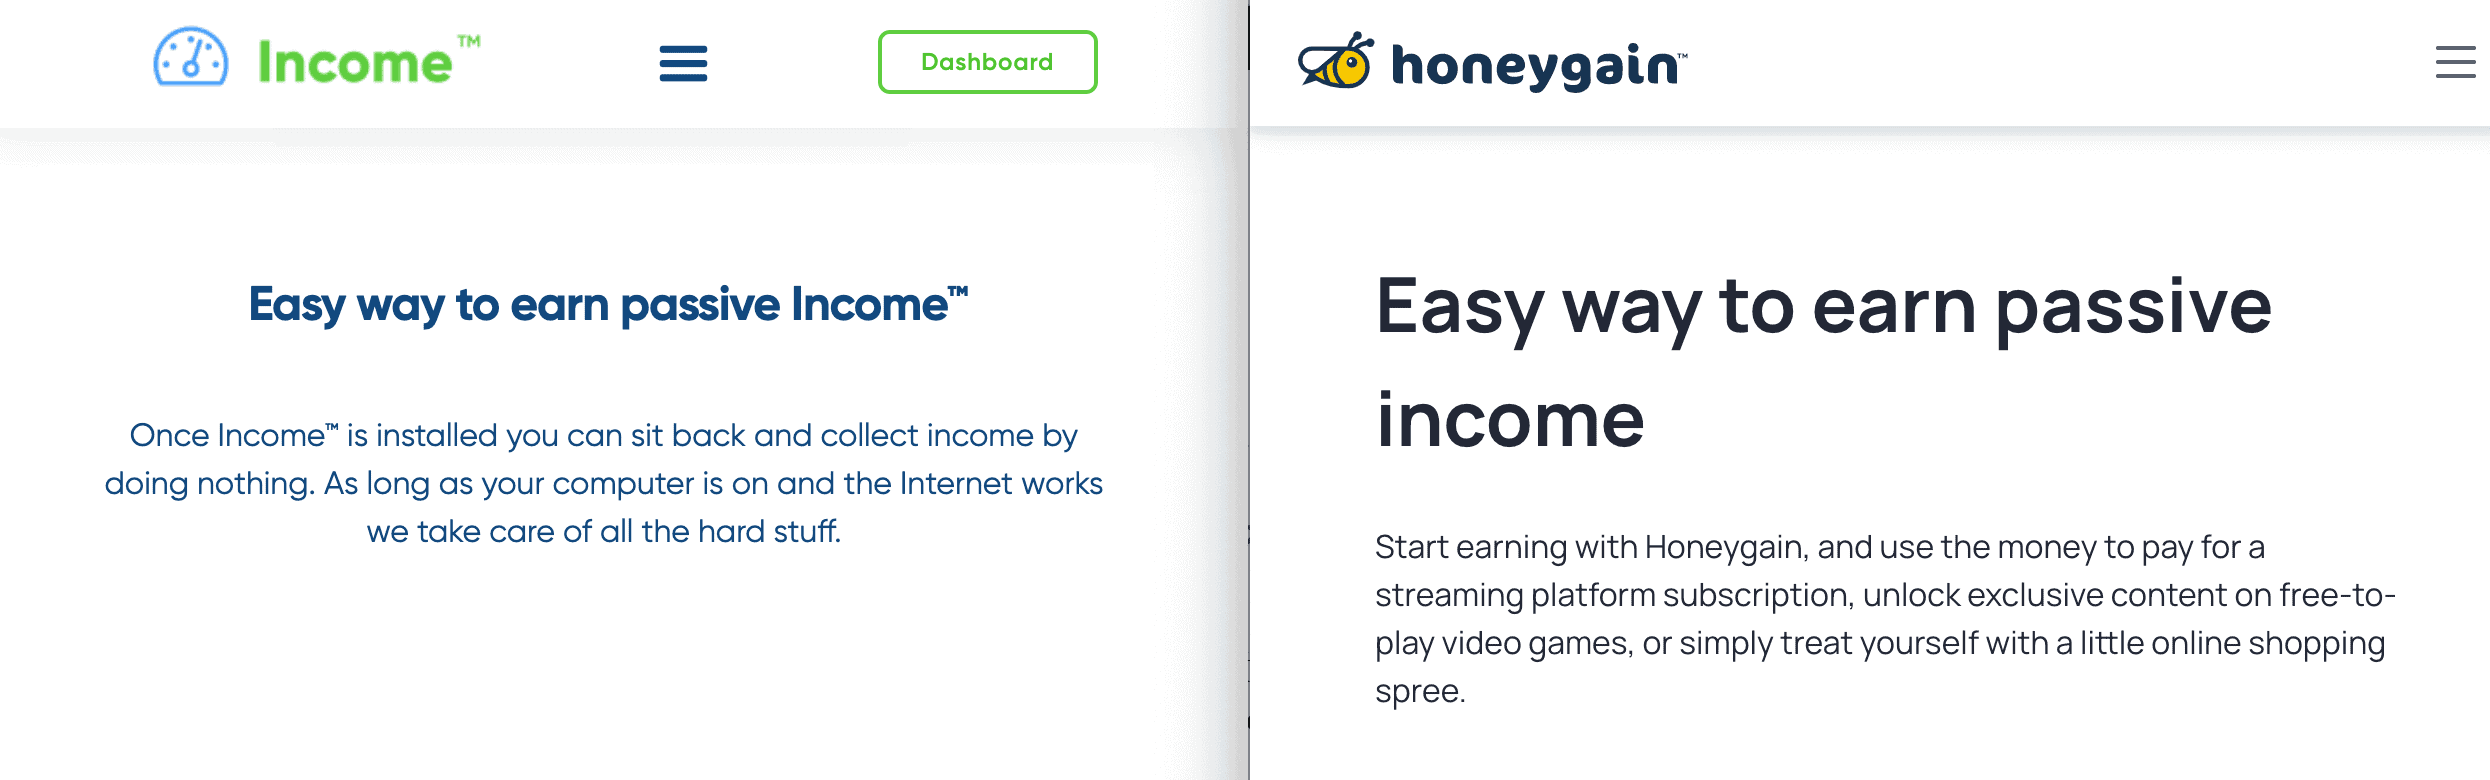 honeygain income comparison